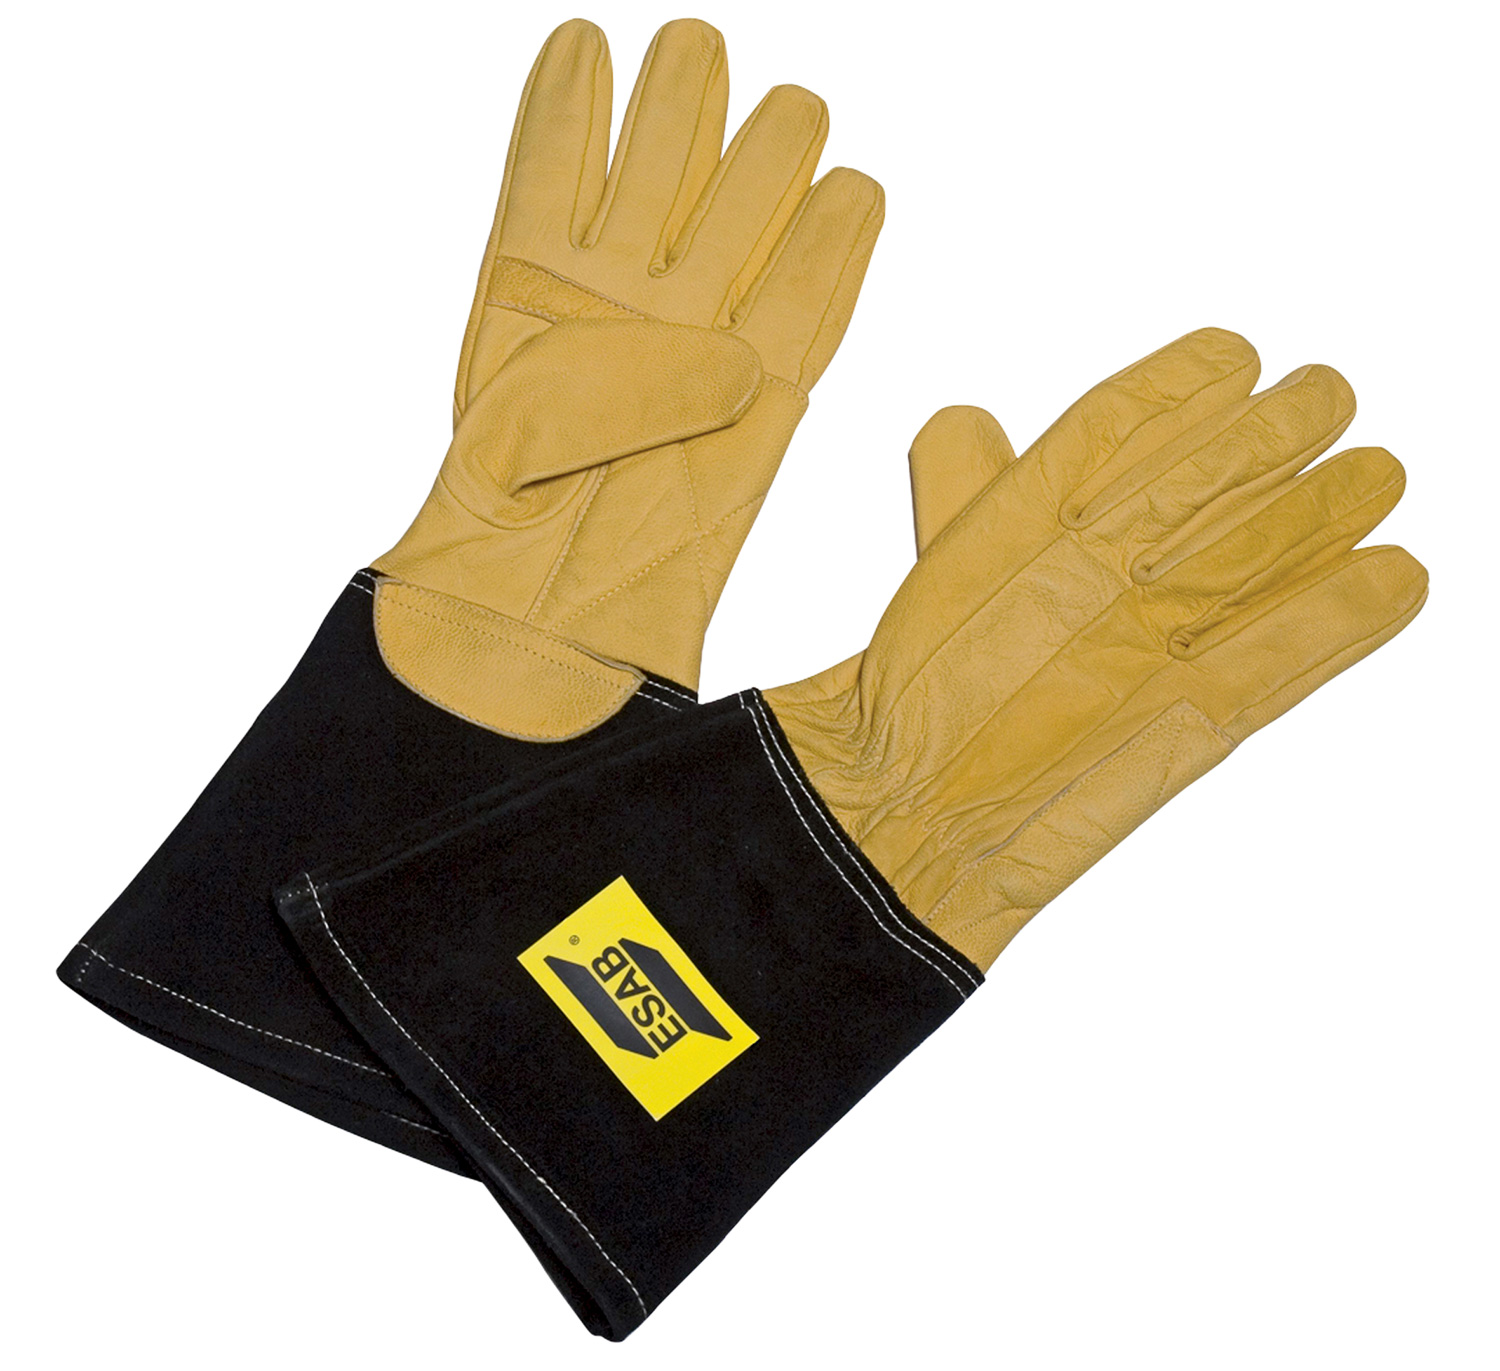 ESAB Curved TIG Glove (нажмите, чтобы увеличить)